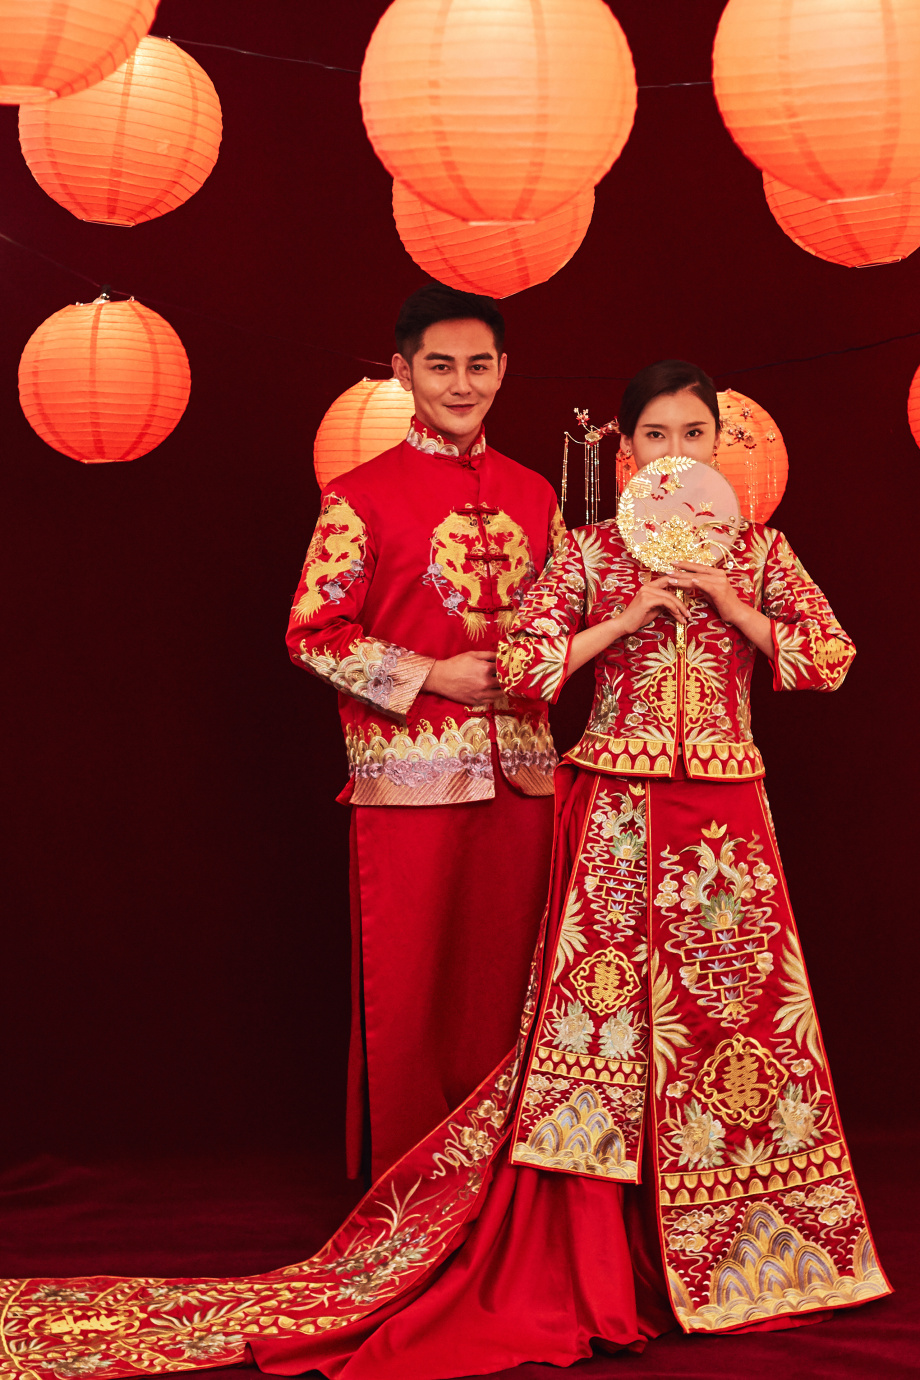 Phong cách Trung Quốc với sự kết hợp của sắc màu truyền thống và hiện đại hiện lên một cách tuyệt vời trong những tấm hình ảnh này. Với những chi tiết như đèn lồng, váy dài, kẽm tre xoắn và bóng lân bên cạnh cặp đôi tình nhân, bạn sẽ trôi vào một không gian thần tiên.